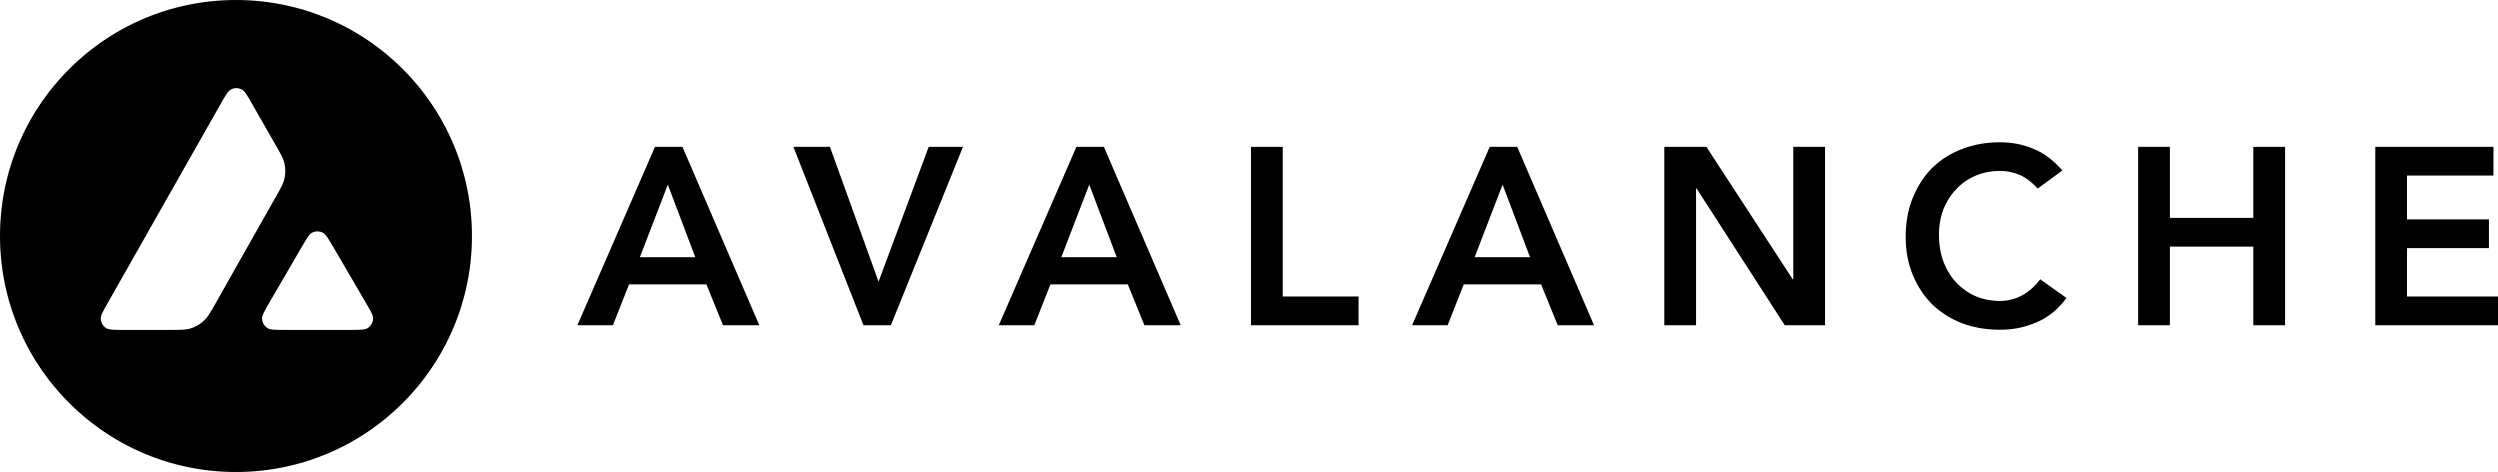 avalanche avax logo